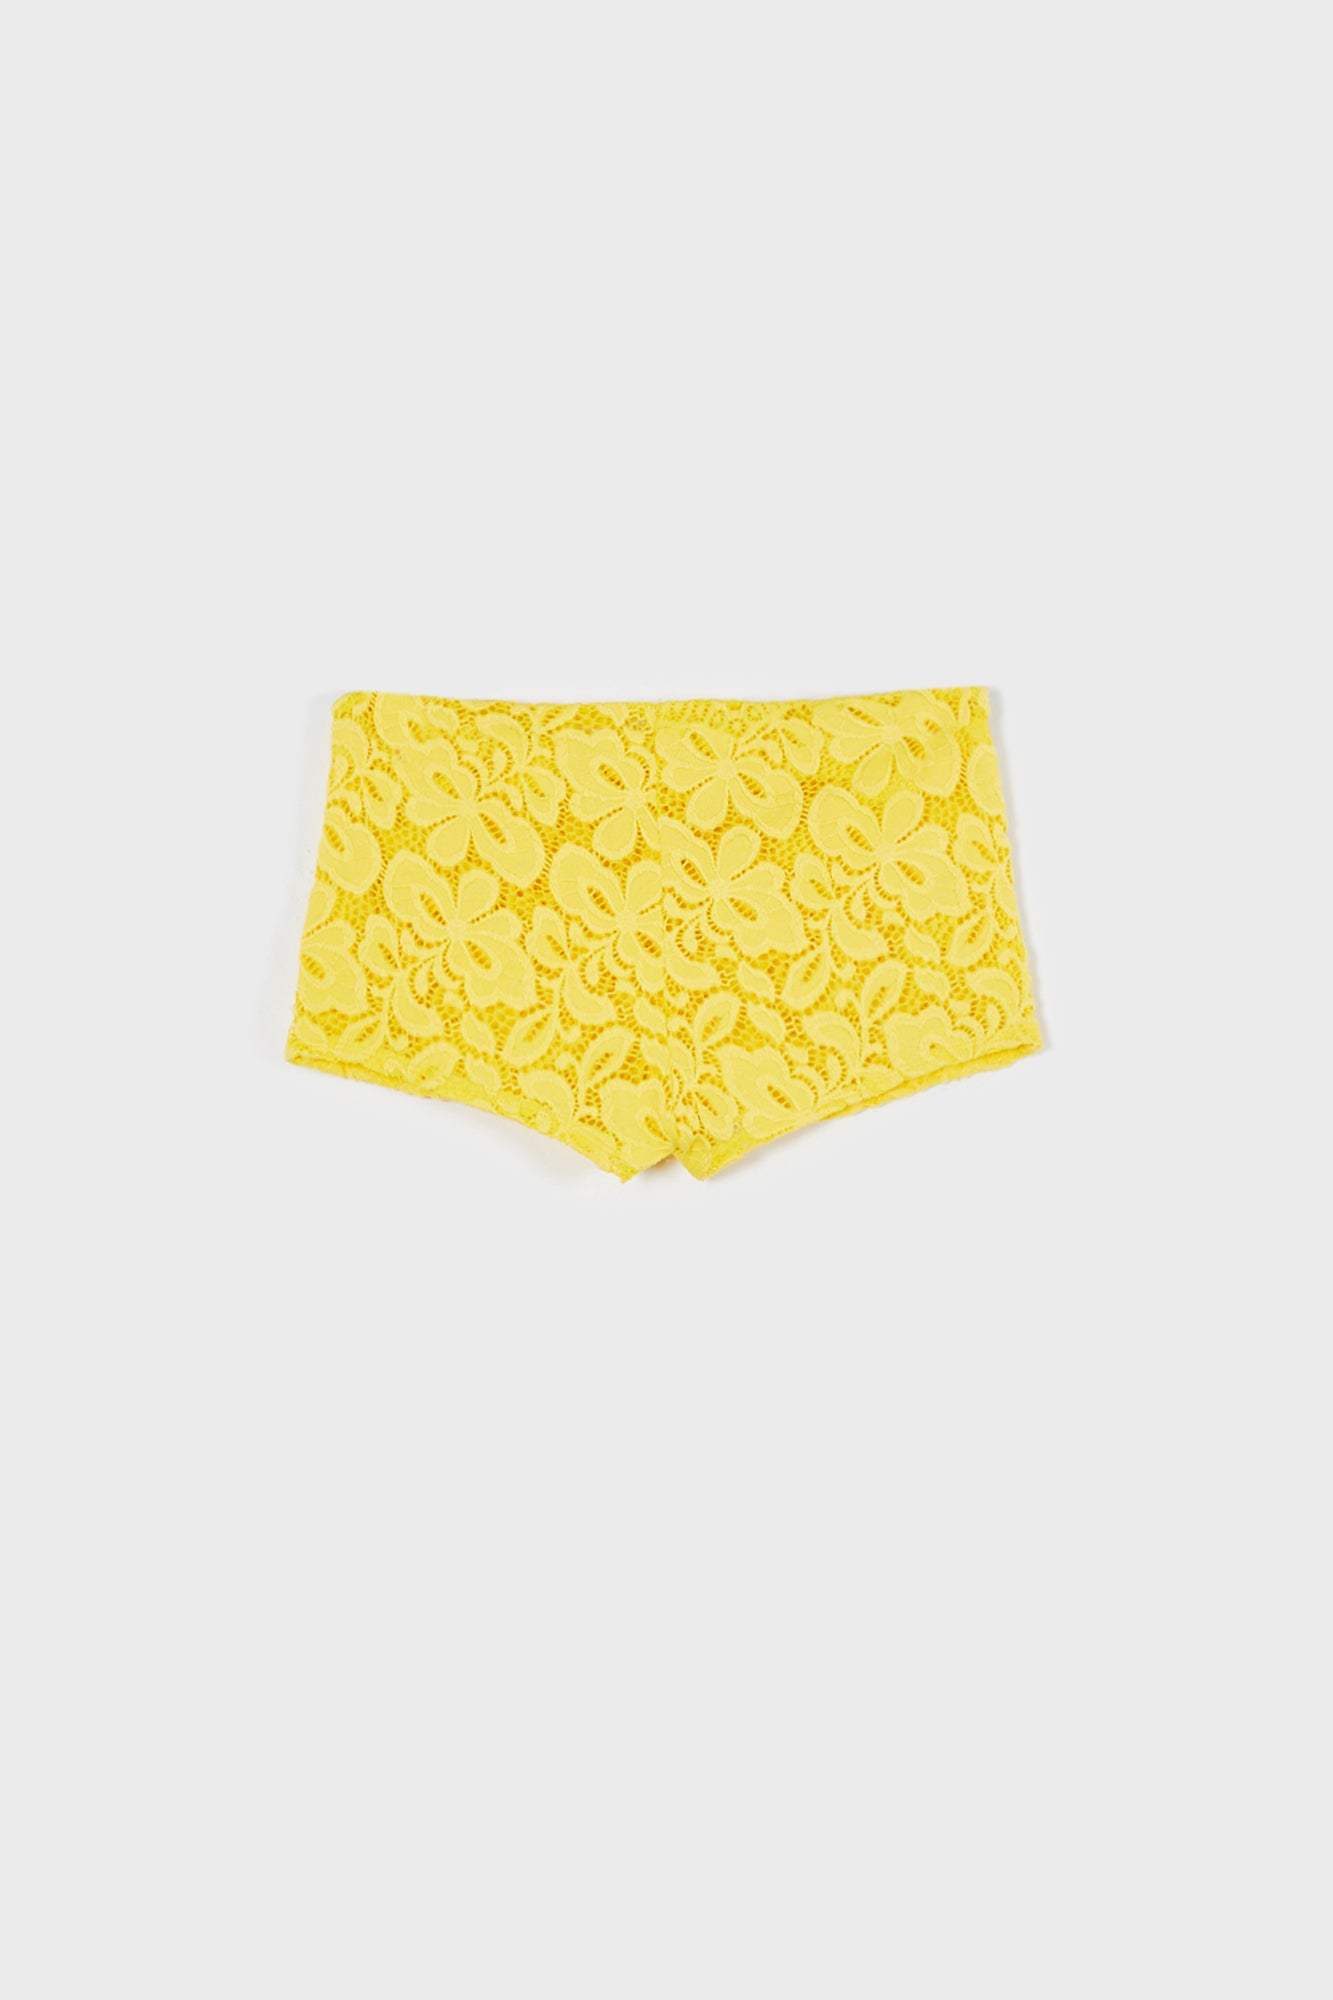 Dakota Shorts - Yellow Lace